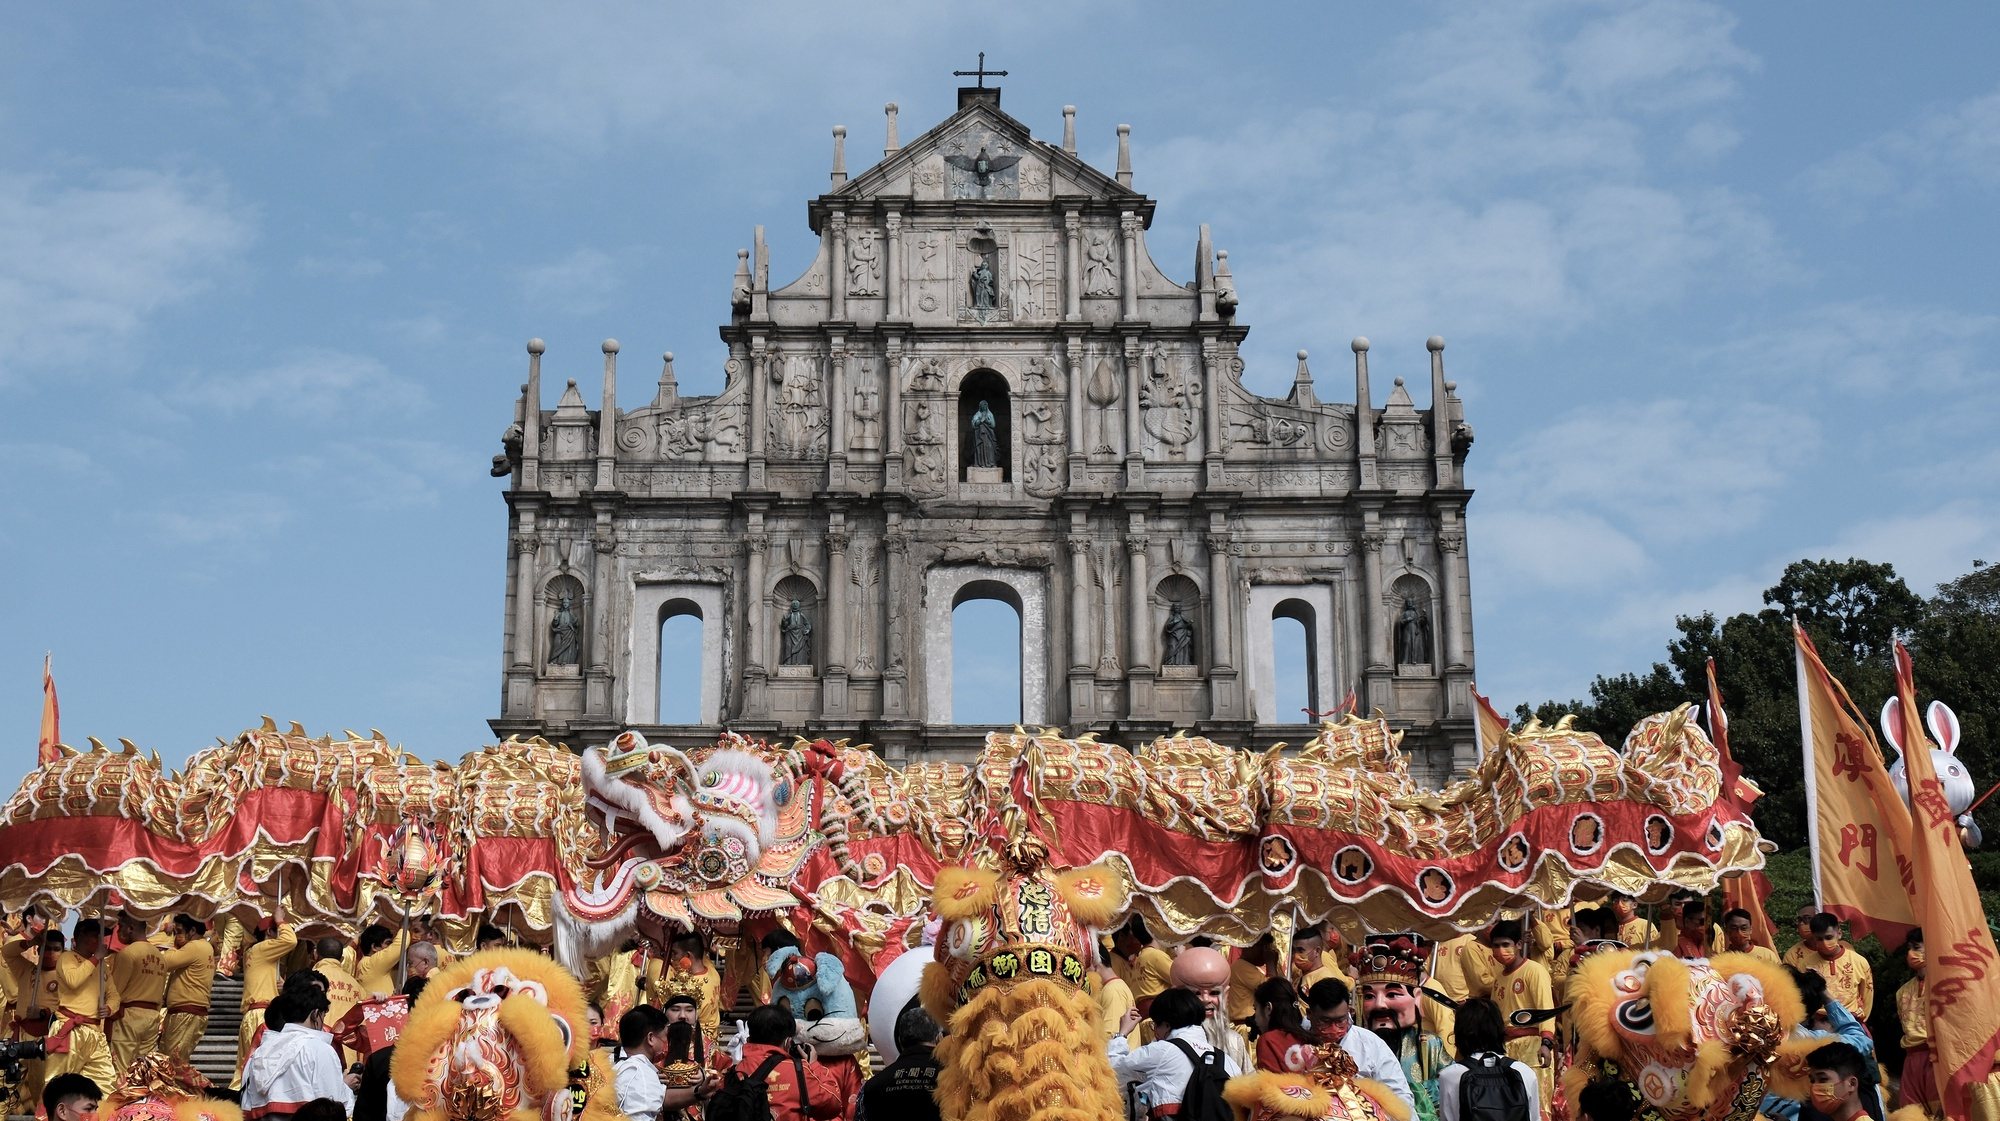 Desfile do Dragão Dourado Gigante durante as celebrações do Ano Novo Chinês do Coelho, em Macau, China, 22 de janeiro de 2023. GONÇALO LOBO PINHEIRO/LUSA